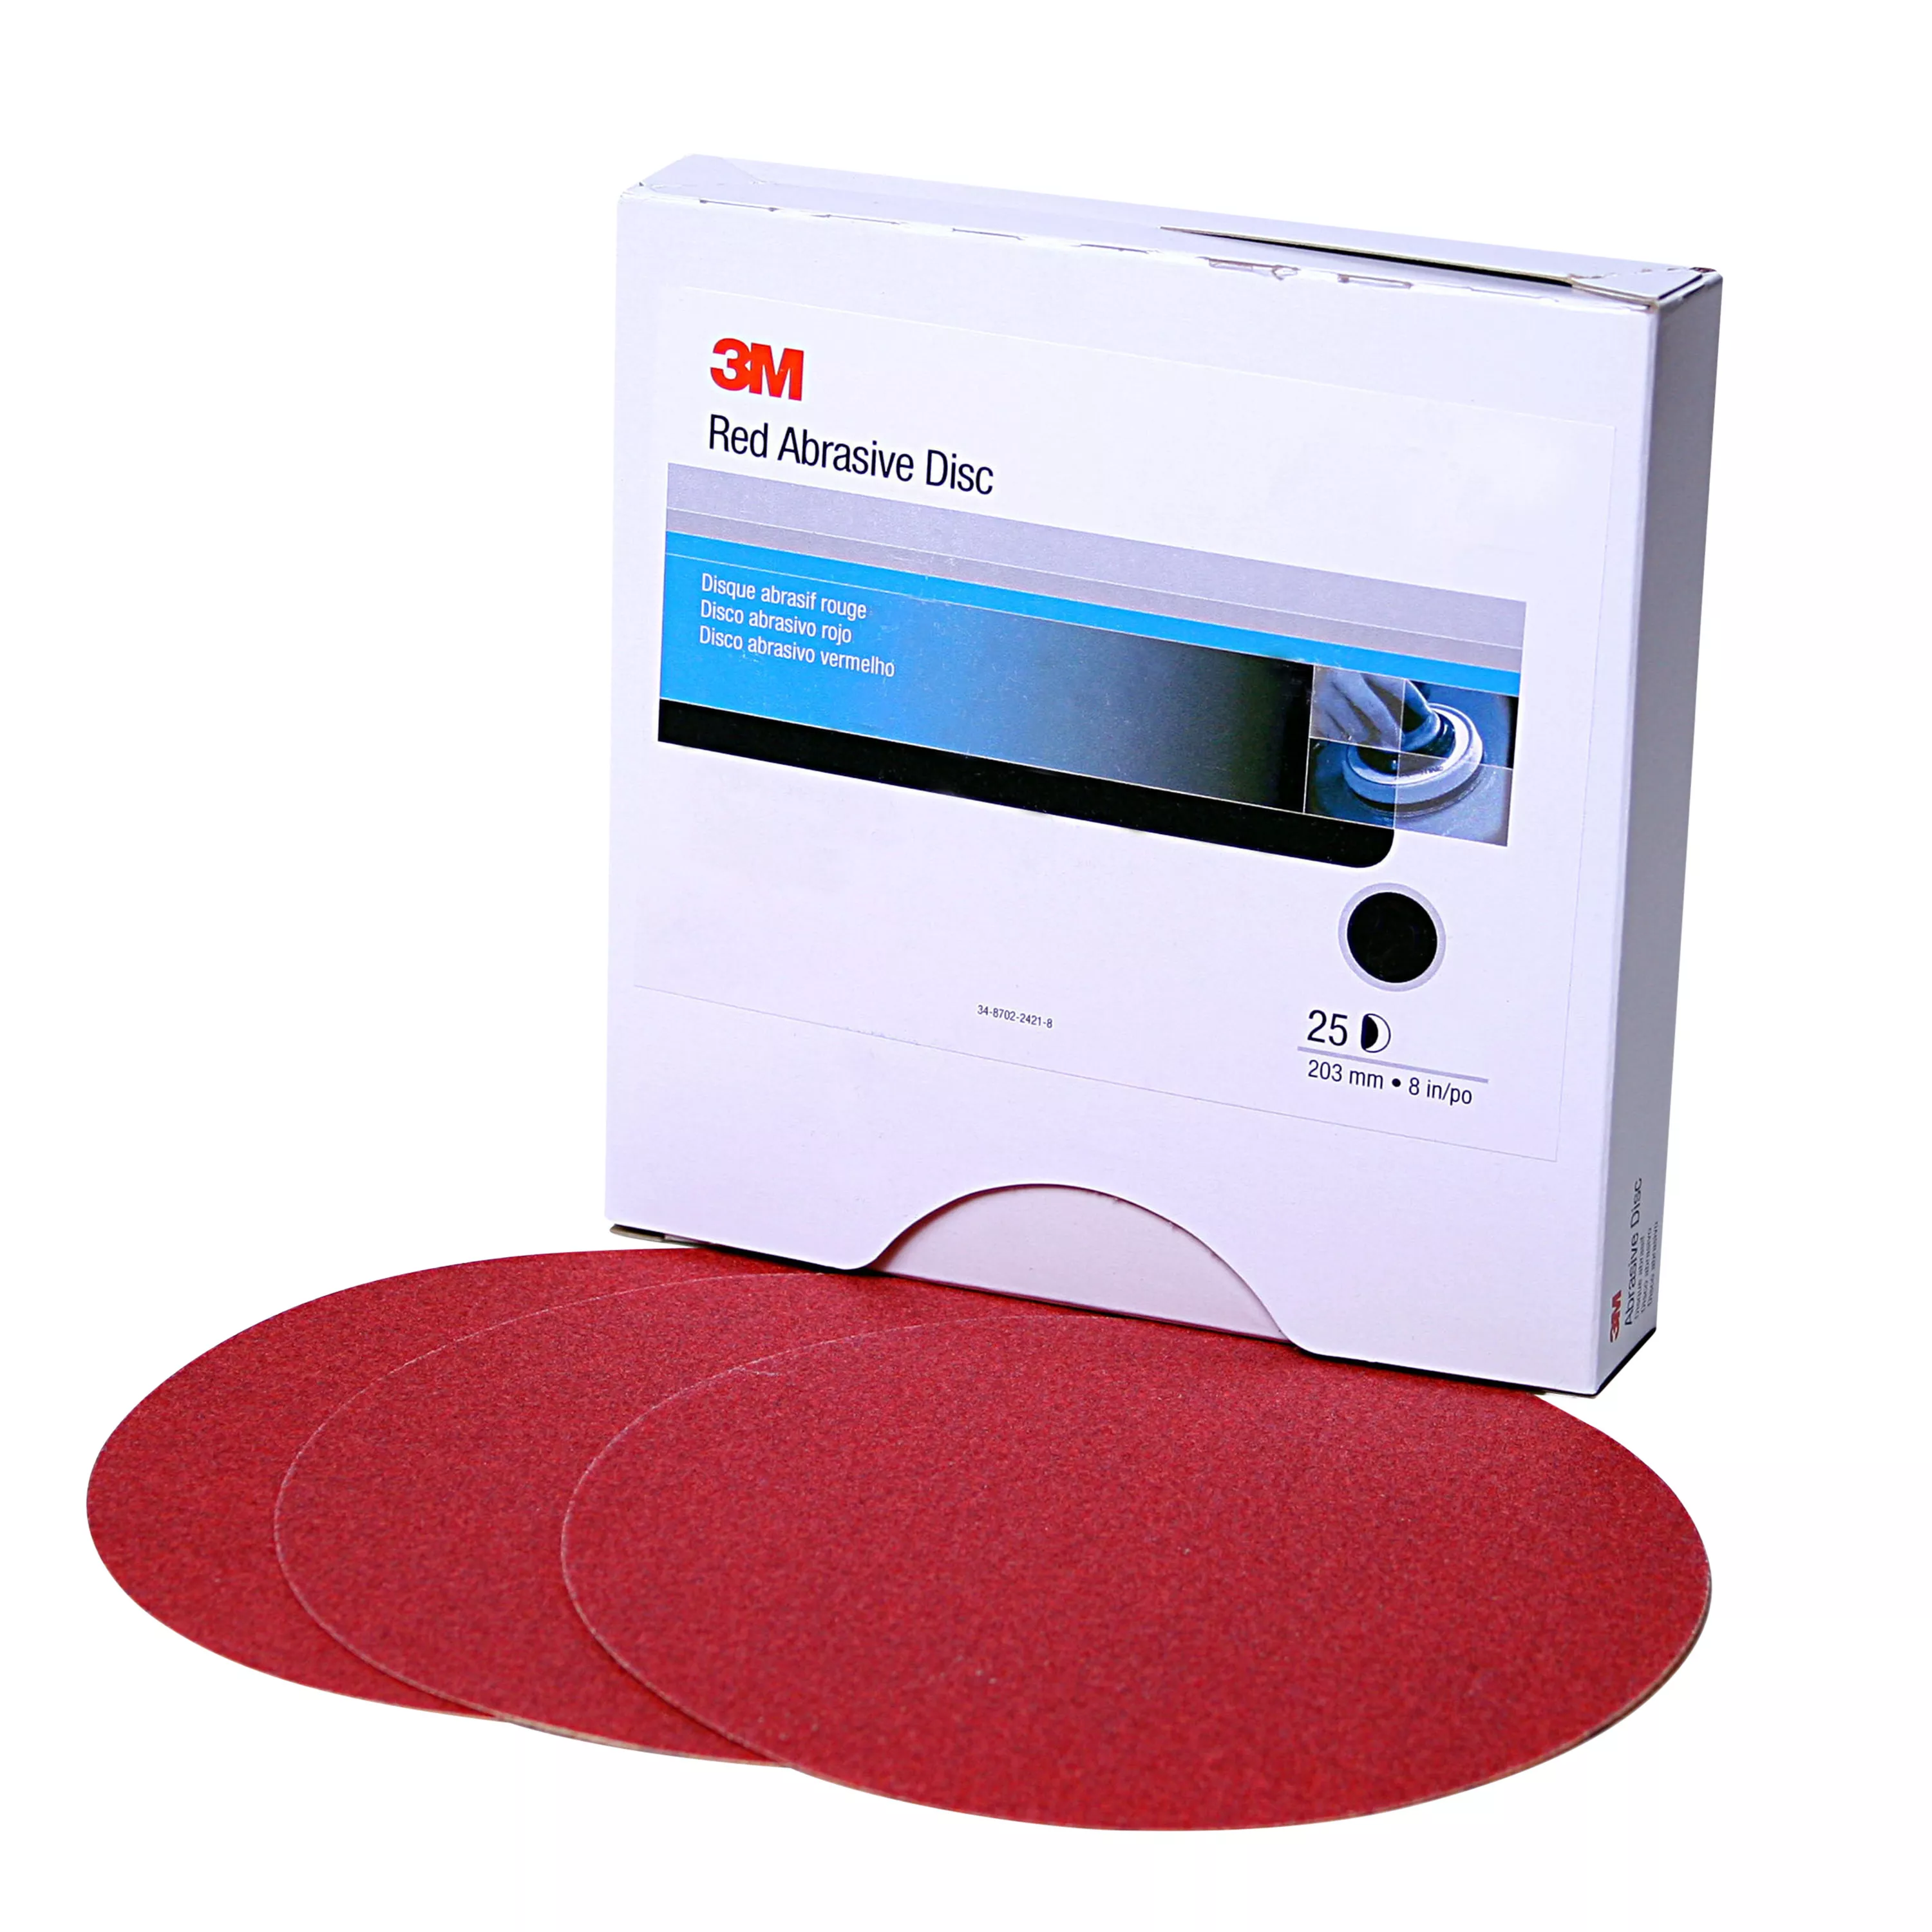 3M™ Red Abrasive Stikit™ Disc, 01111, 6 in, P220 grade, 100 discs per
roll, 6 rolls per case